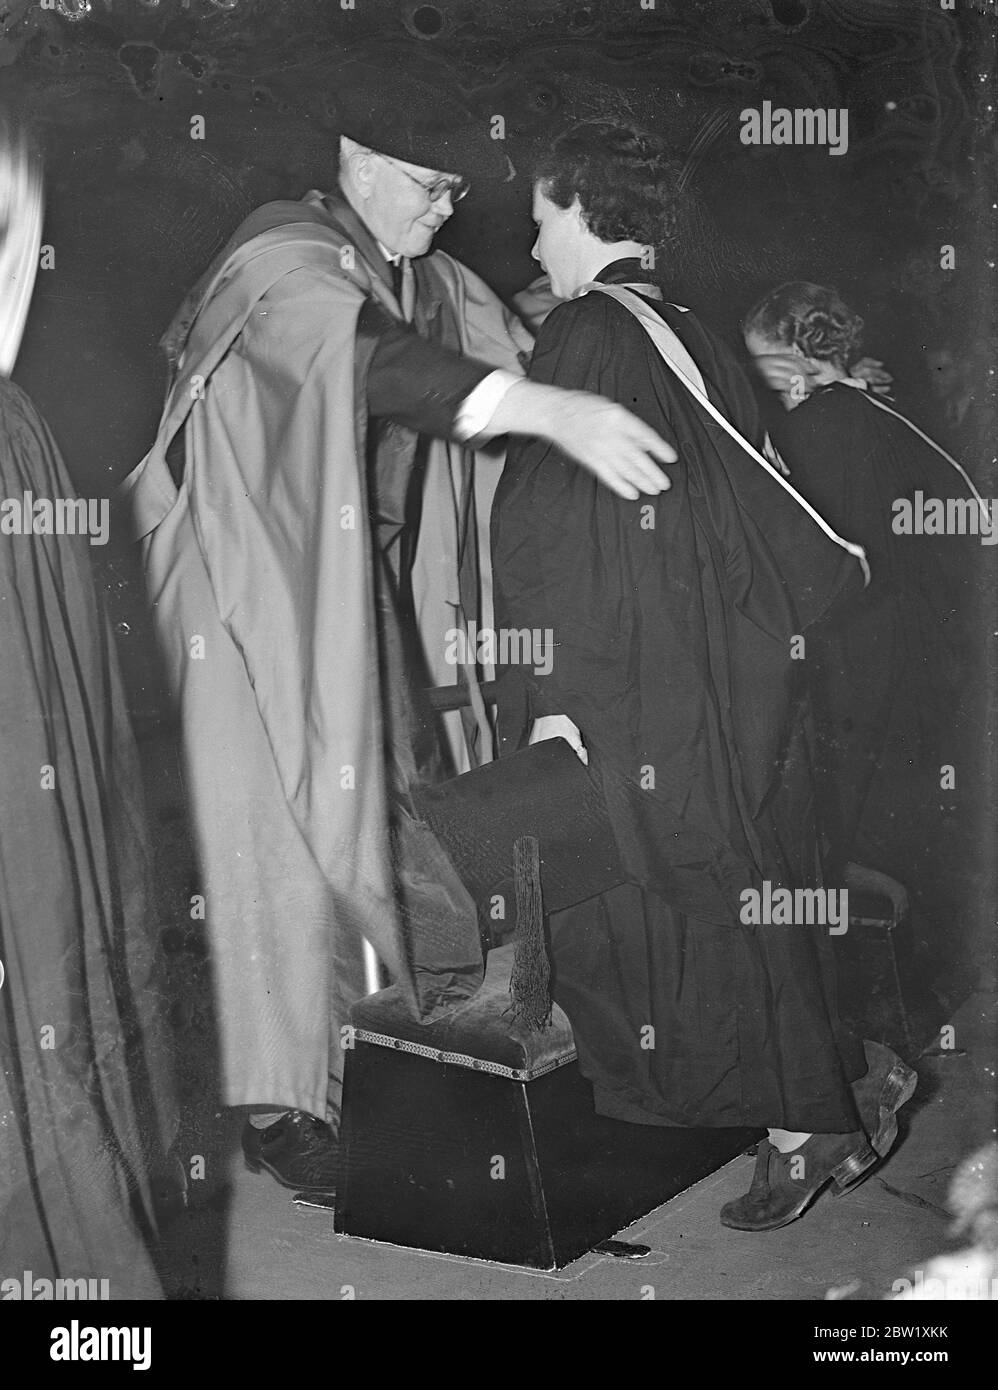 Mädchen Student erhält Abschluss an der Universität London Presentation Day. Eine Reihe von Mädchen waren unter den Studenten der London University, die ihren Grad erhalten, wenn Presentation Day fand in der Royal Albert Hall. Foto zeigt, eine Studentin erhält ihren Abschluss. 20 Mai 1937 Stockfoto